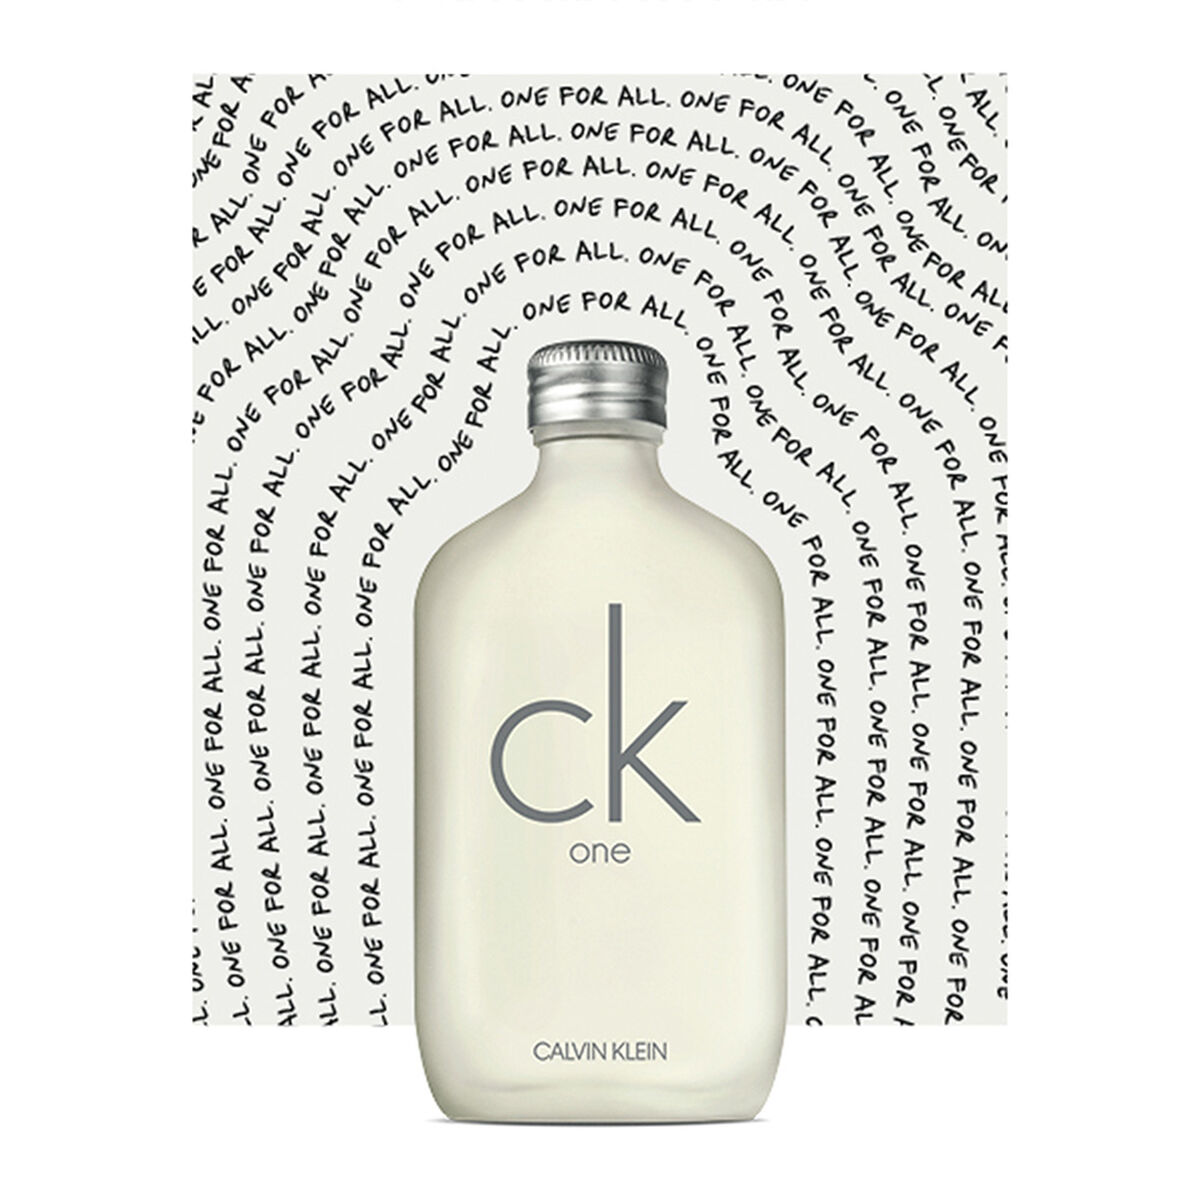 Perfume Calvin Klein CK One EDT 200 ml